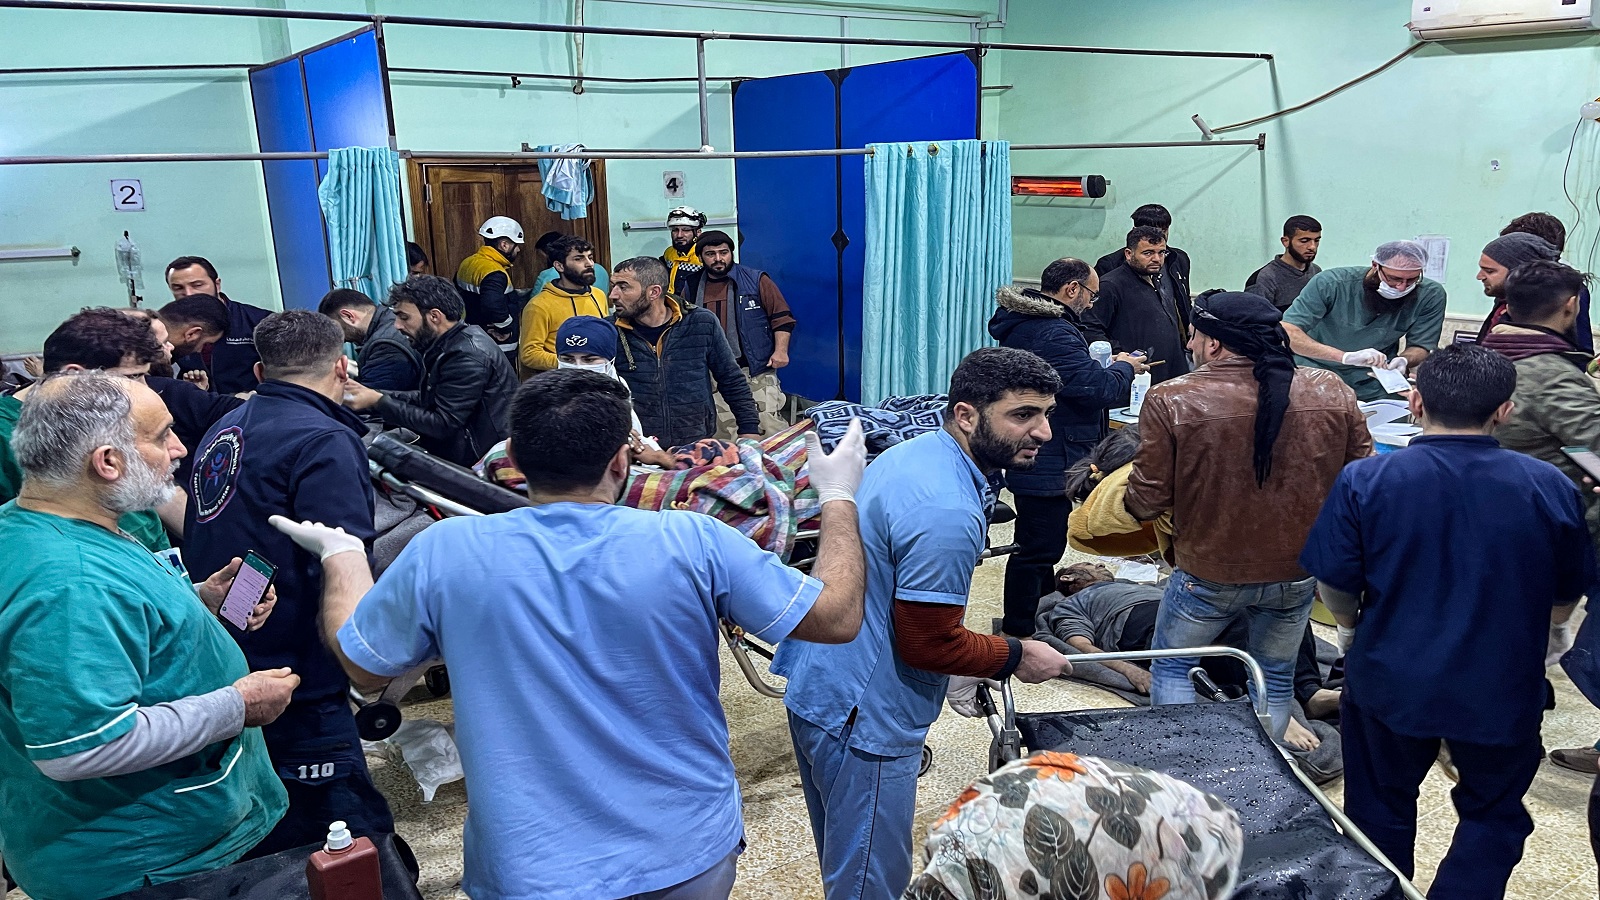 النظام يطلب من المتطوعين تصريحاً أمنياً لمساعدة ضحايا الزلزال